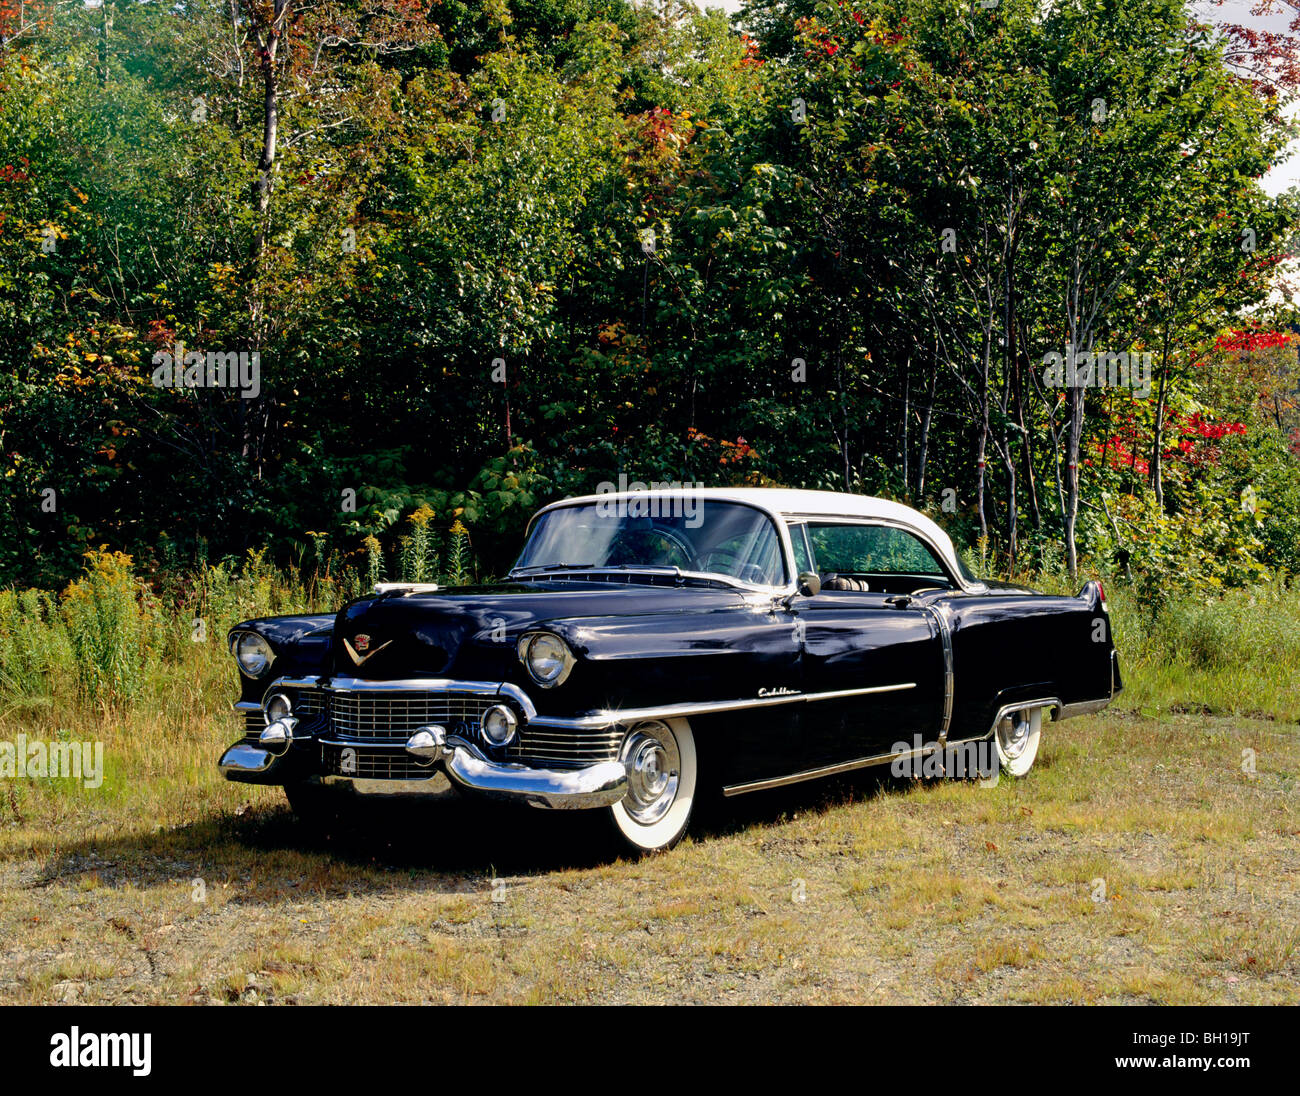 Vintage 1954 Cadillac Eldorado Series 62 car, Waterloo, Quebec, Canada Stock Photo